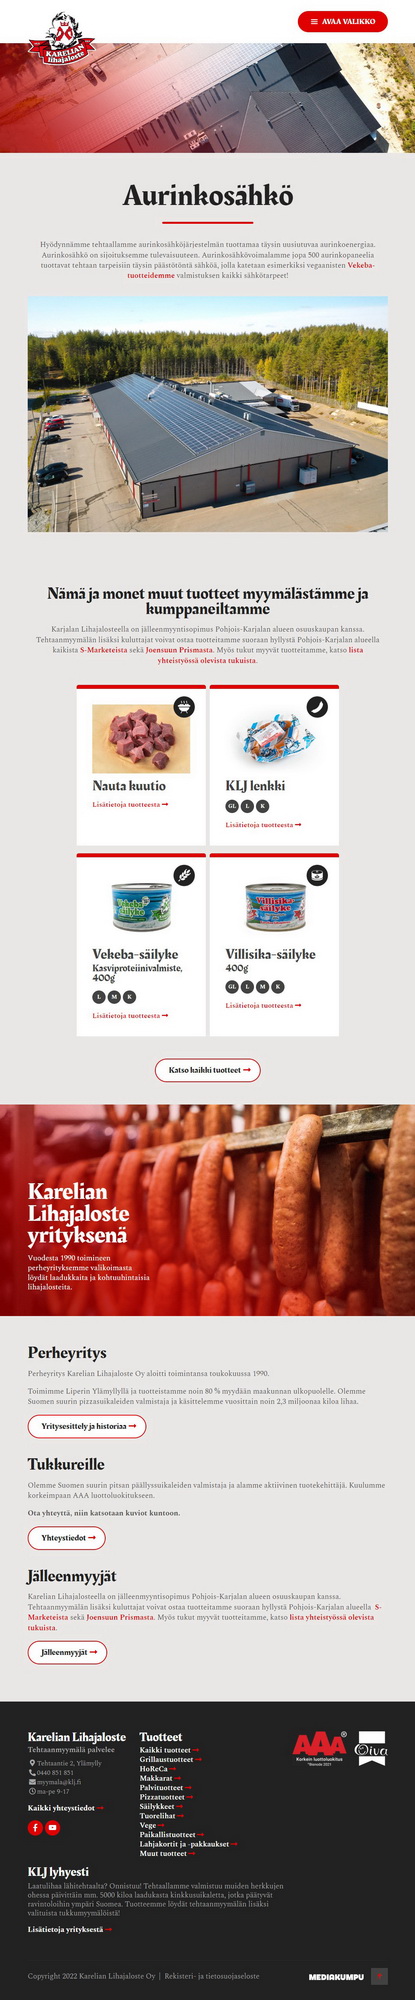 Mediakumpu WordPress-kotisivut Joensuu | karelianlihajaloste.fi sivusto, aurinkosähkö